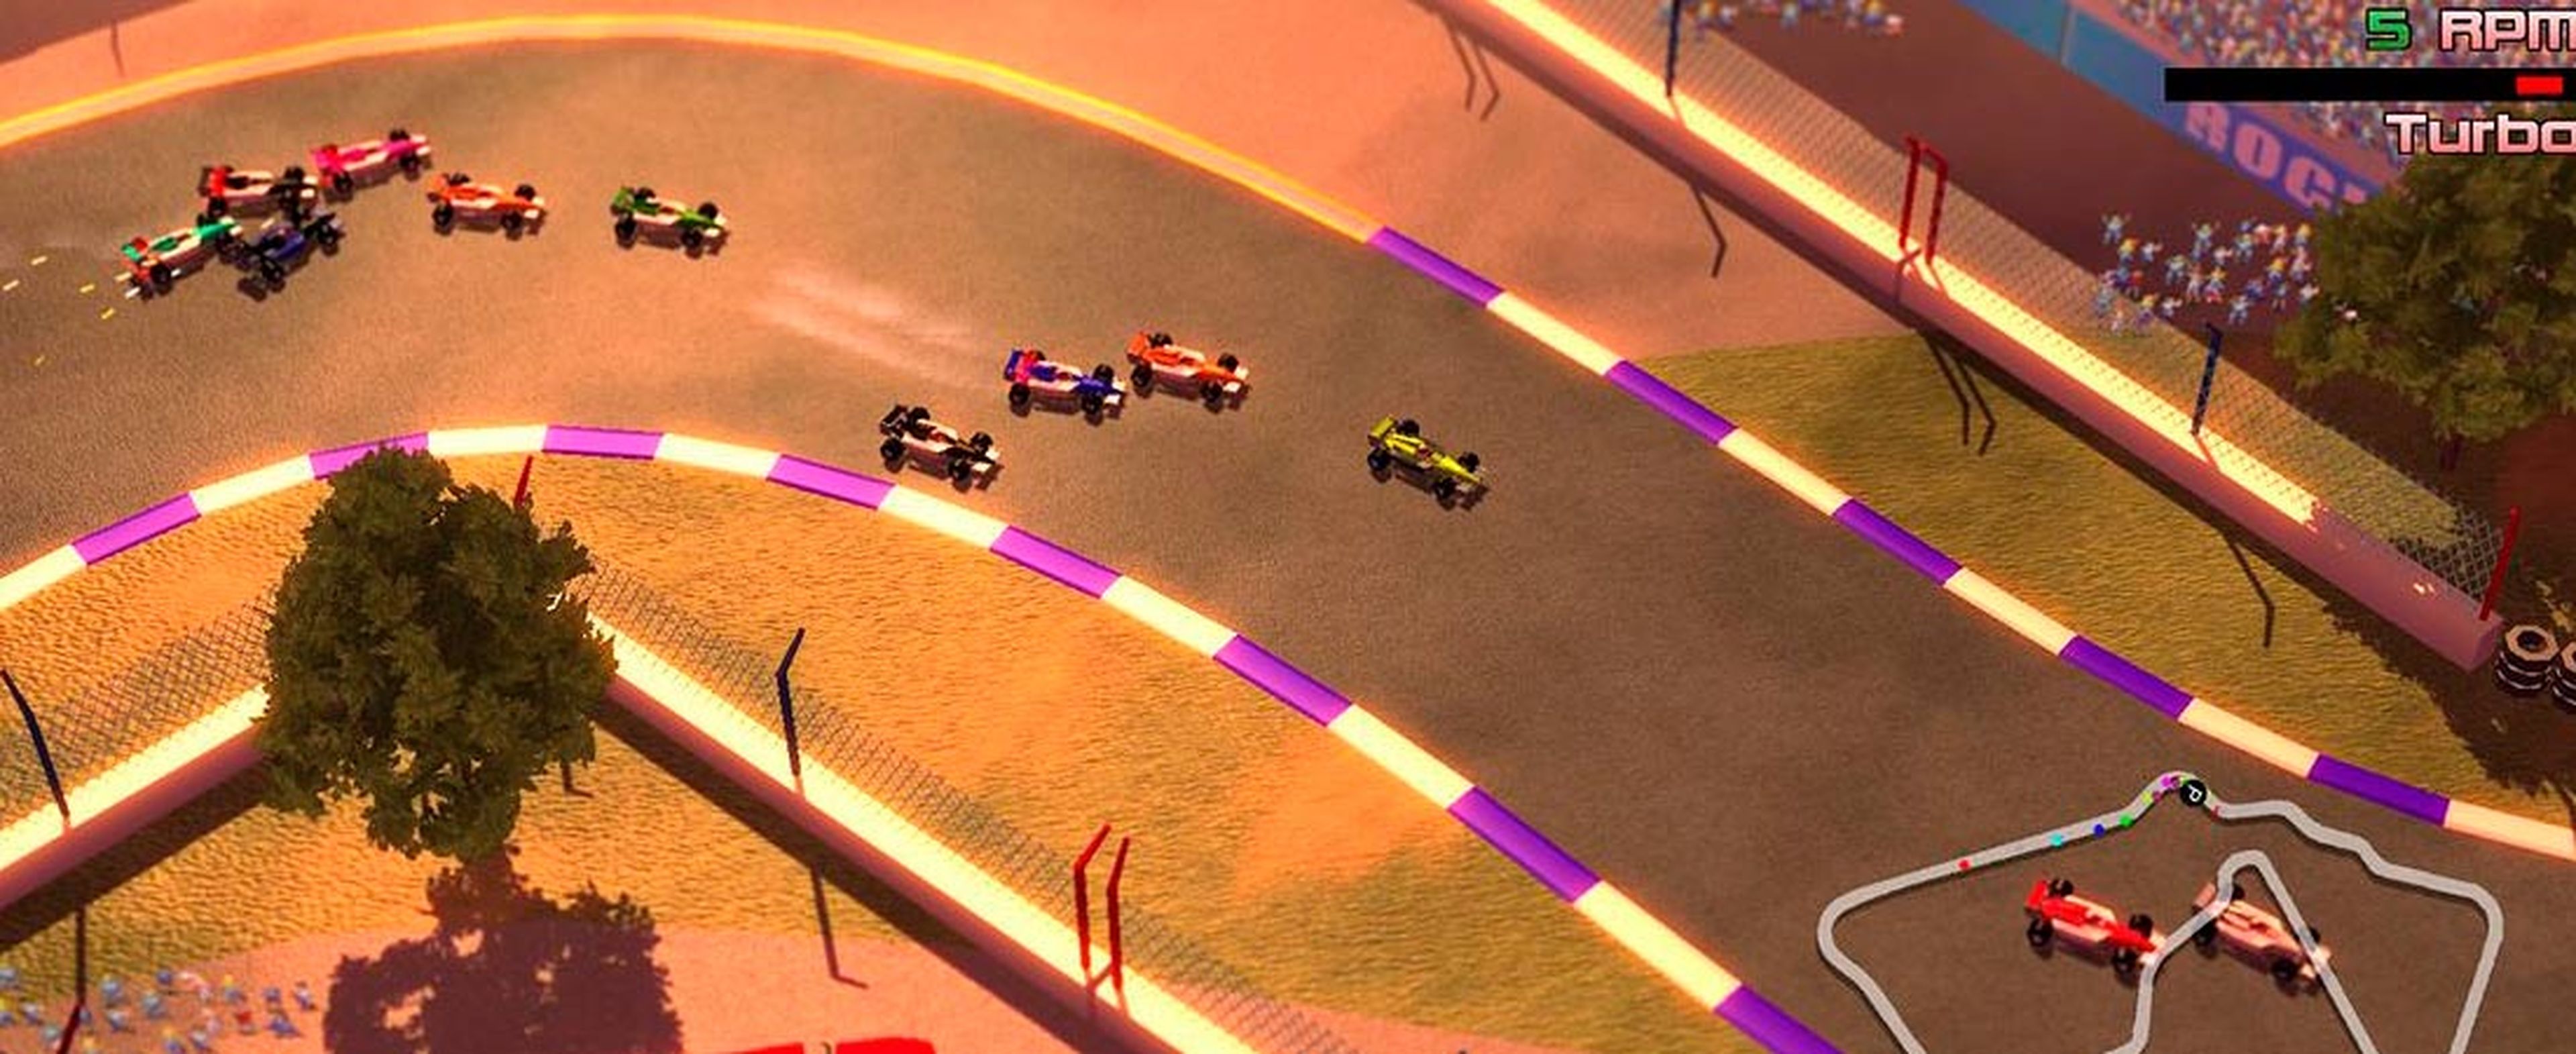 Grand Prix Rock 'N Racing para WiiU